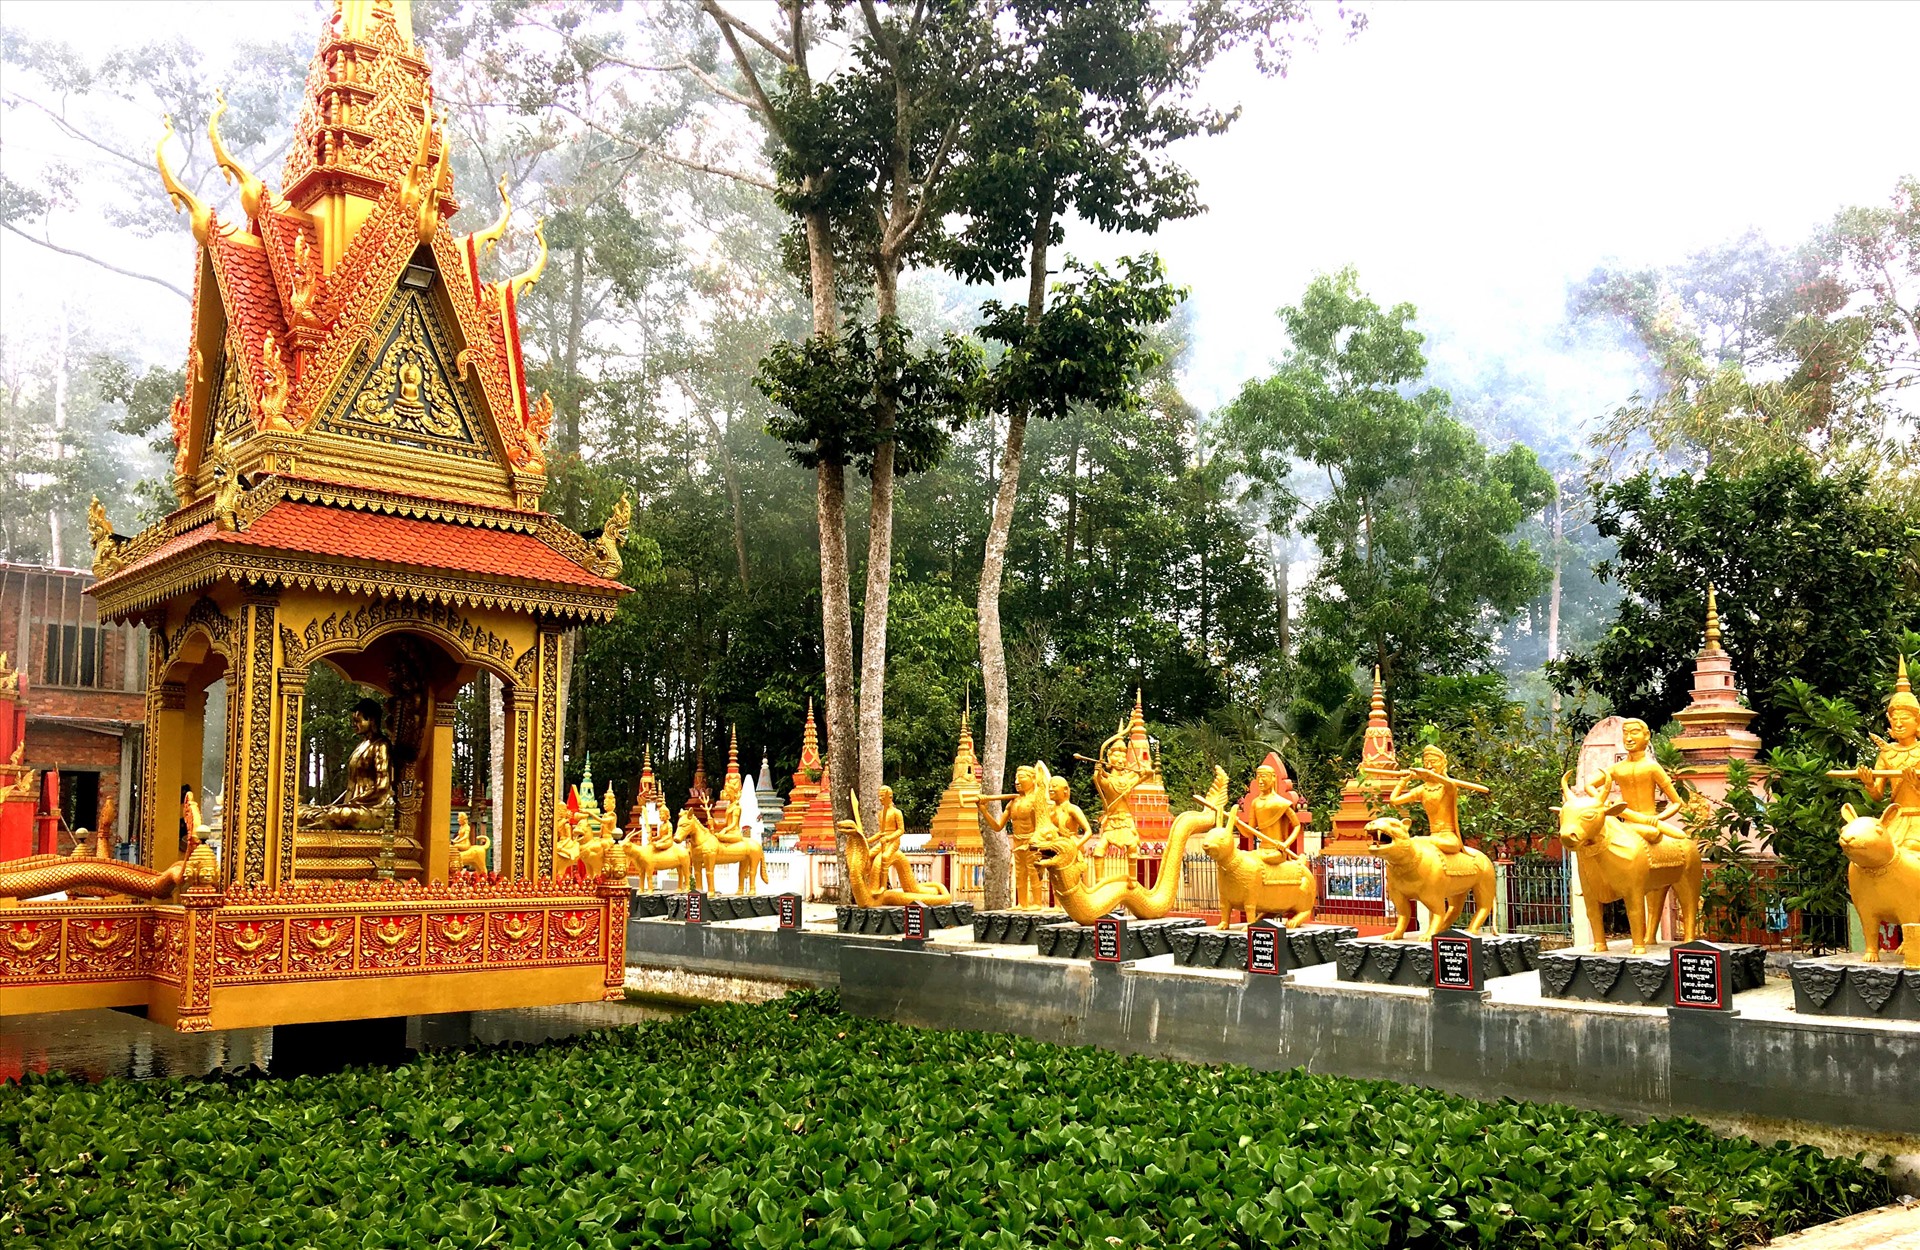 Hiện tại, vùng Tây Nam Bộ có khoảng 600 ngôi chùa Khmer mang những vẻ đẹp rực rỡ và cổ kính. Nơi đây không chỉ lưu giữ nhiều giá trị văn hóa mà còn là điểm đến thu hút đông đảo du khách